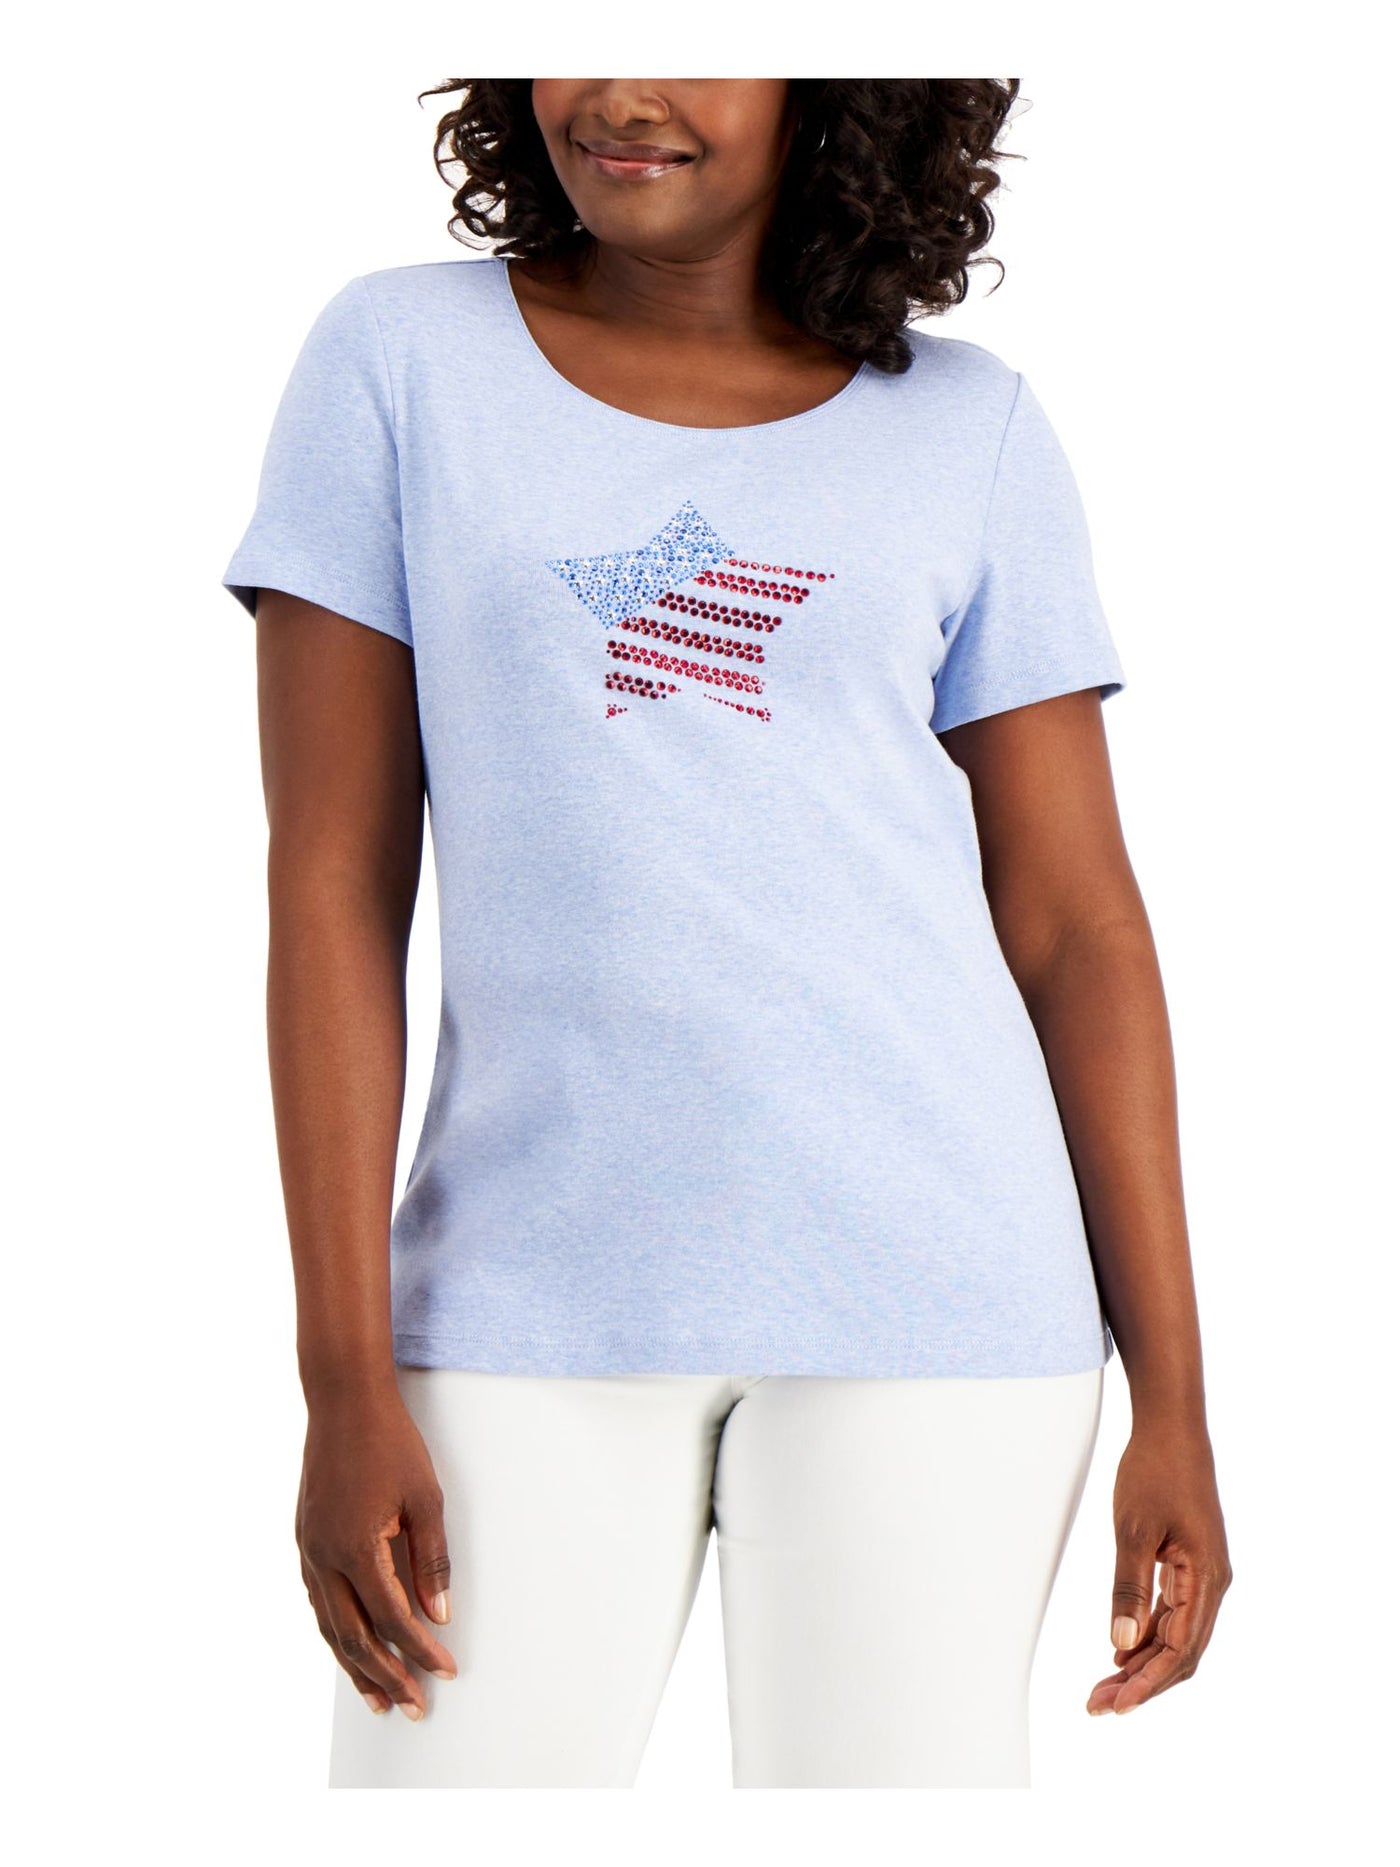 KAREN SCOTT Womens Light Blue Cotton Blend Heather Short Sleeve Crew Neck T-Shirt Petites PM